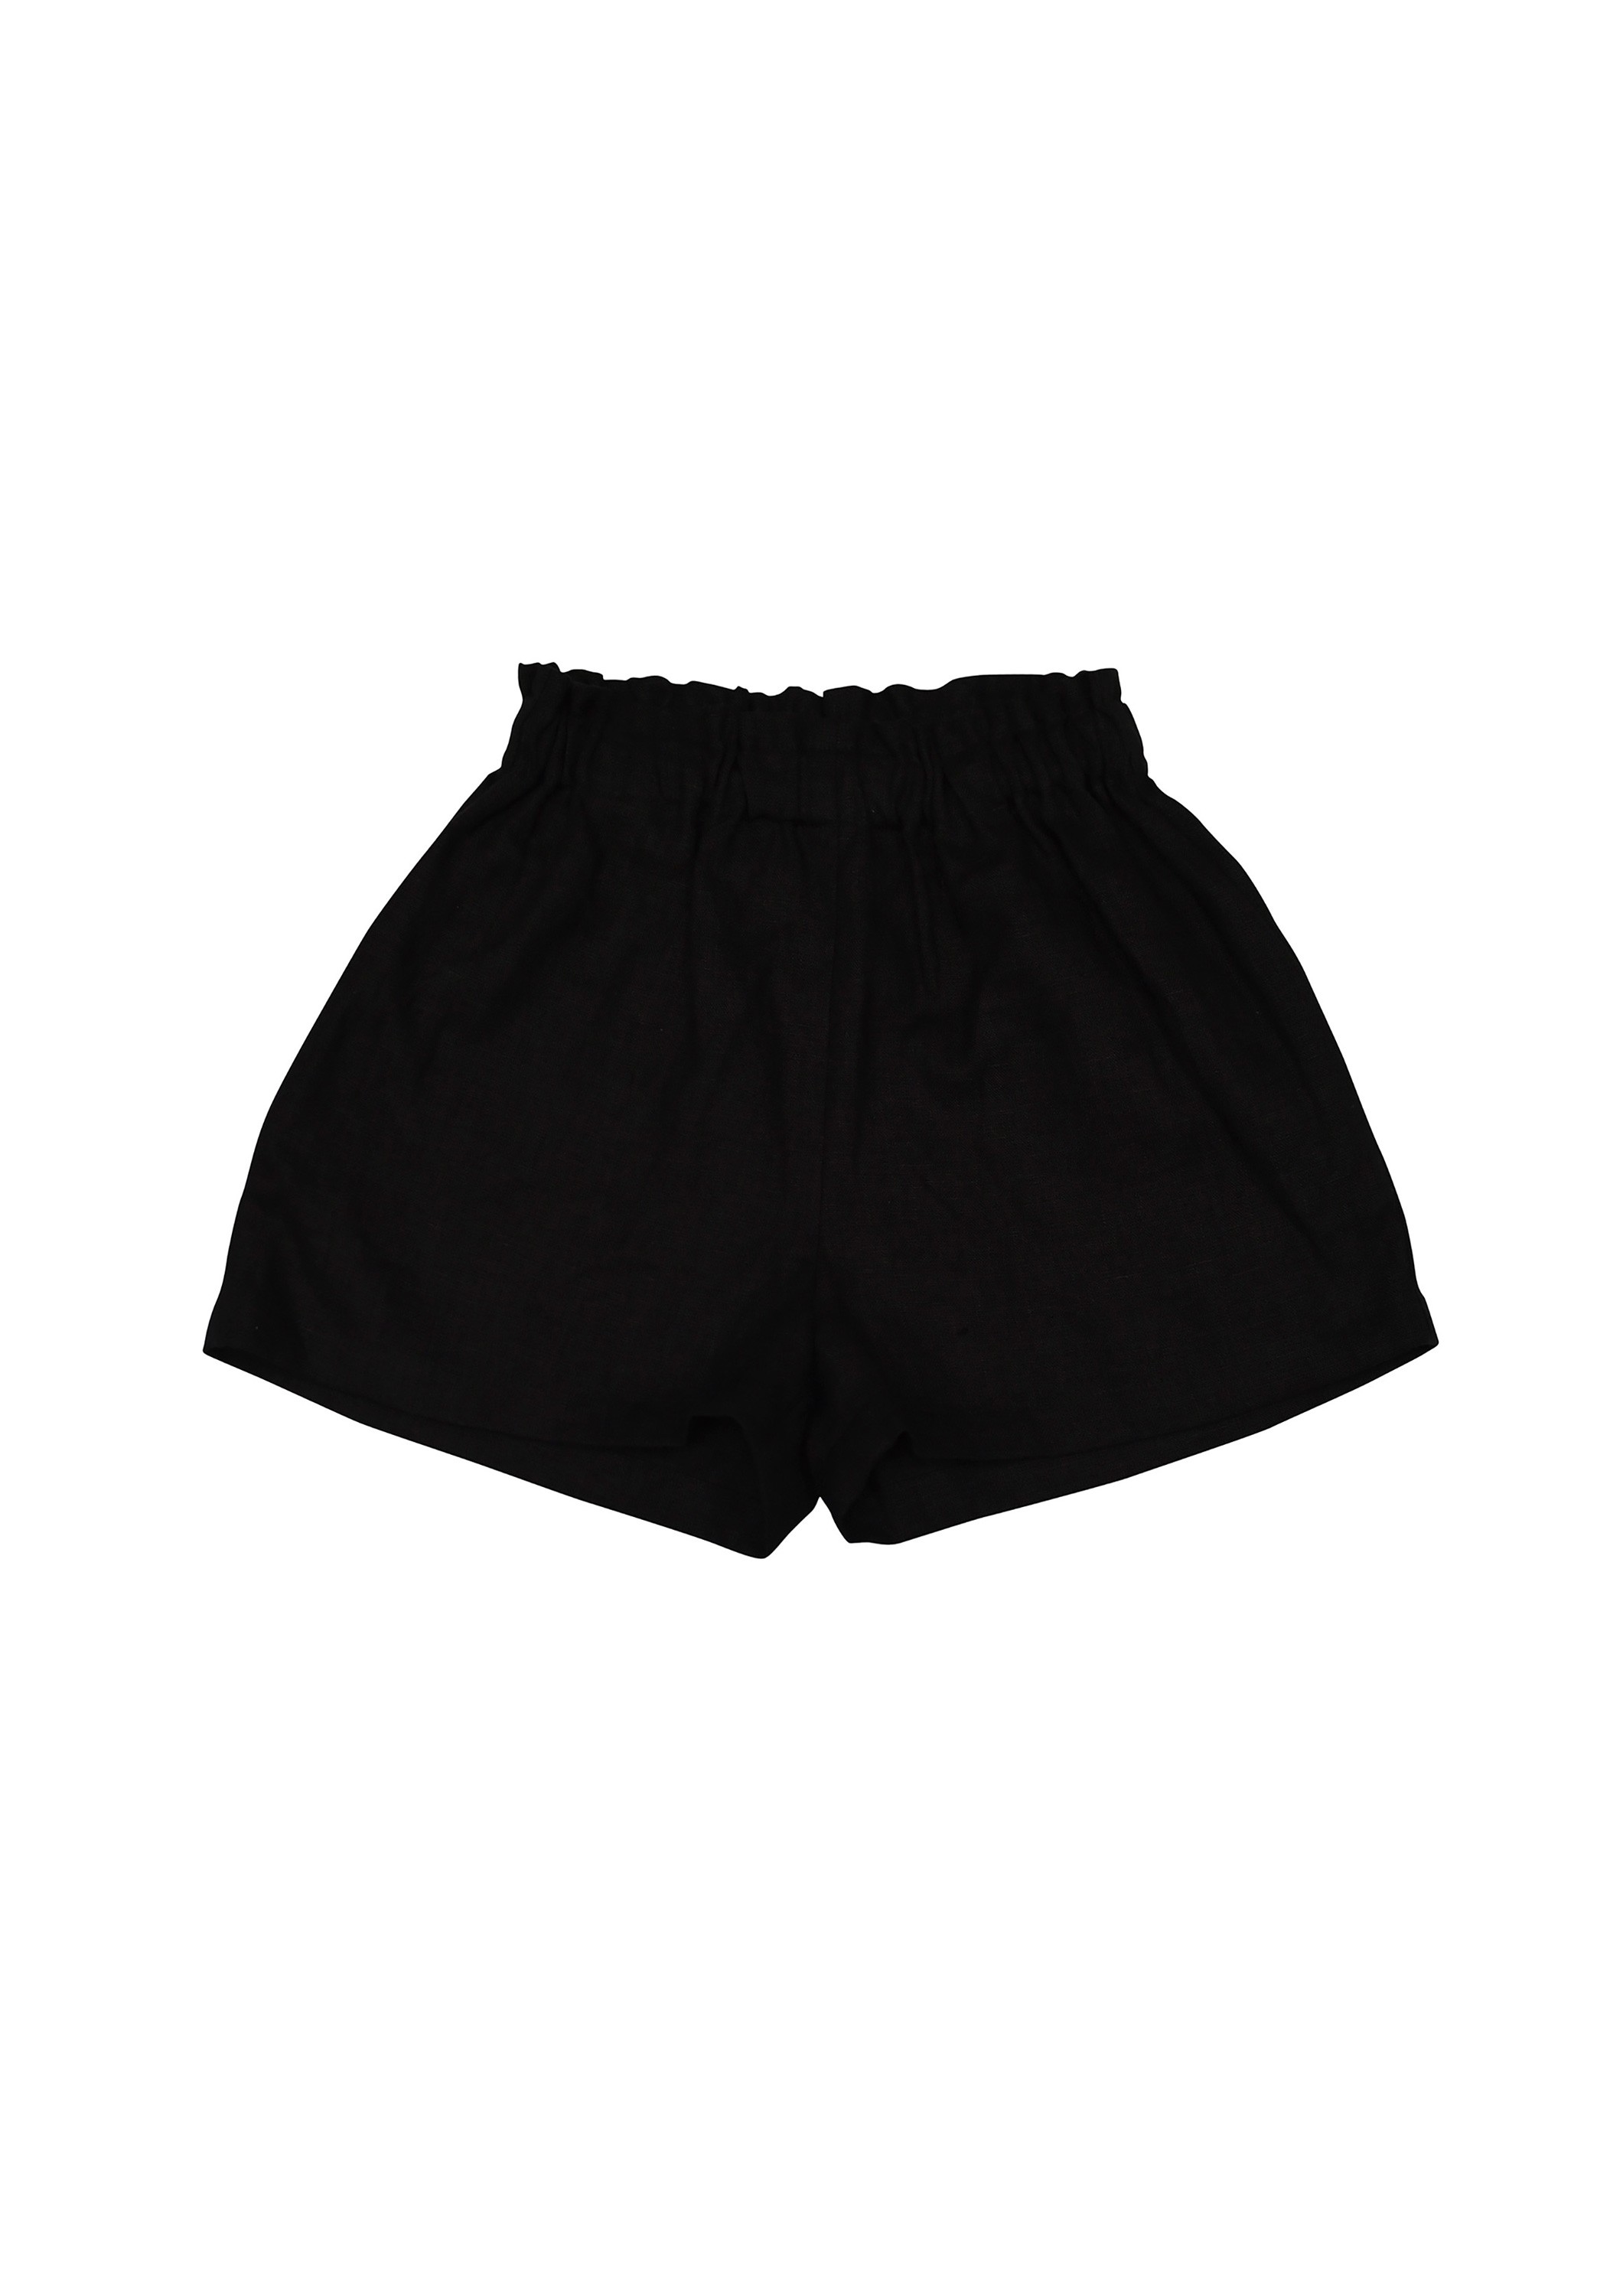 Shorts black linen for girls | HEBE